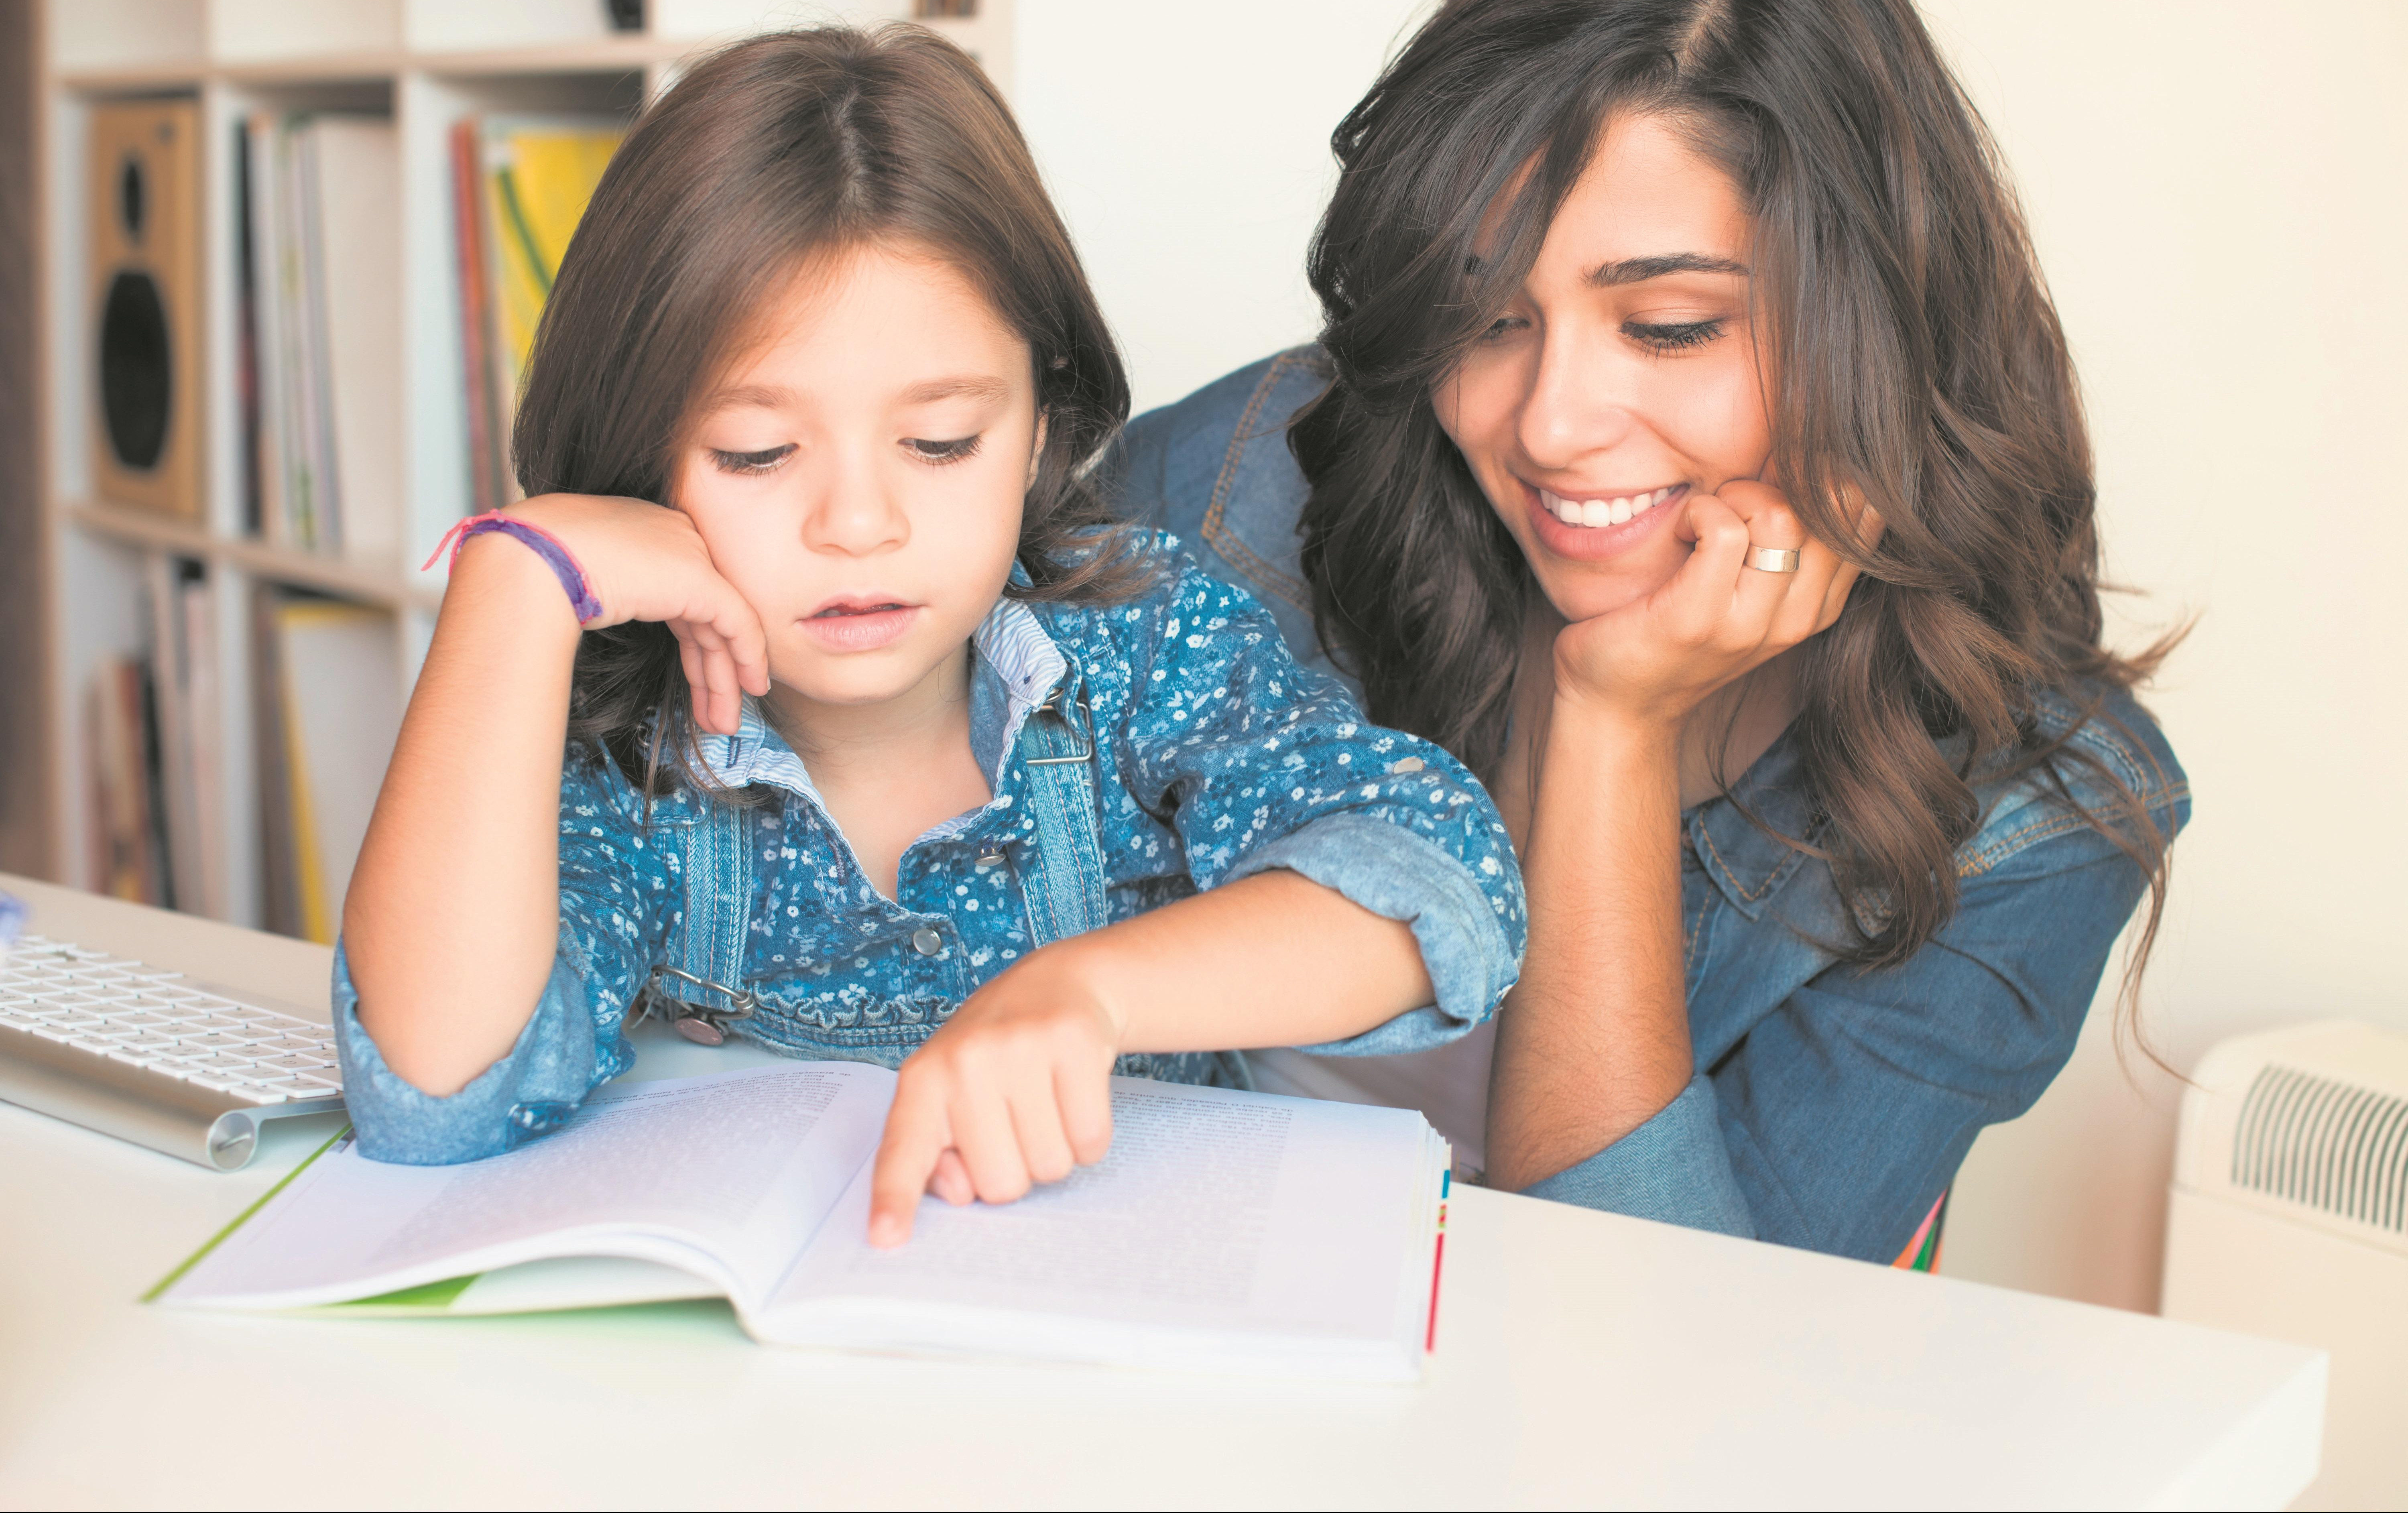 BUDITE IM PRIMER: Kako motivisati decu da budu bolji đaci?